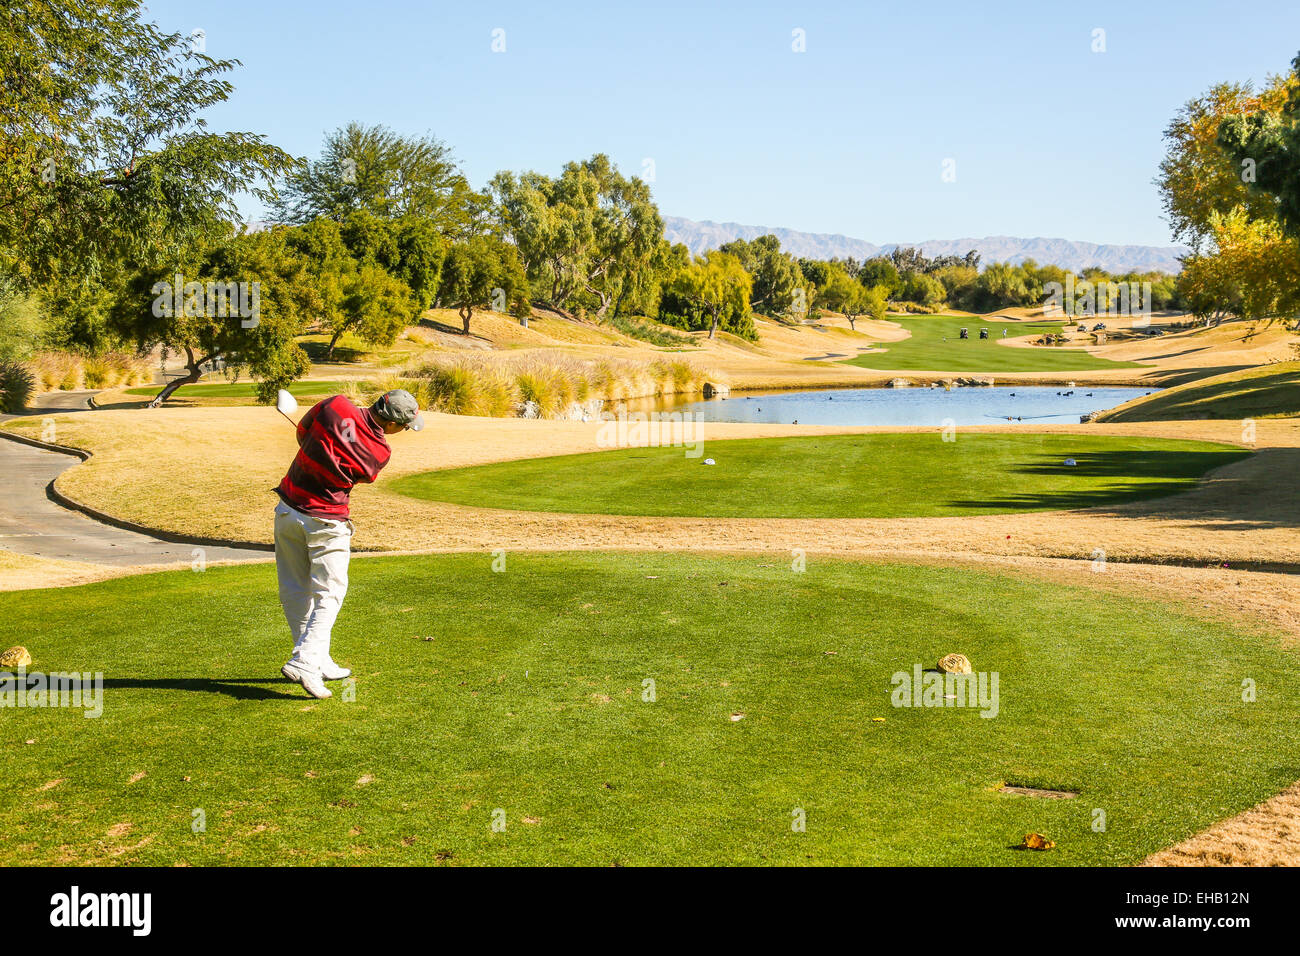 Un homme sur le terrain de golf pour jouer Banque D'Images